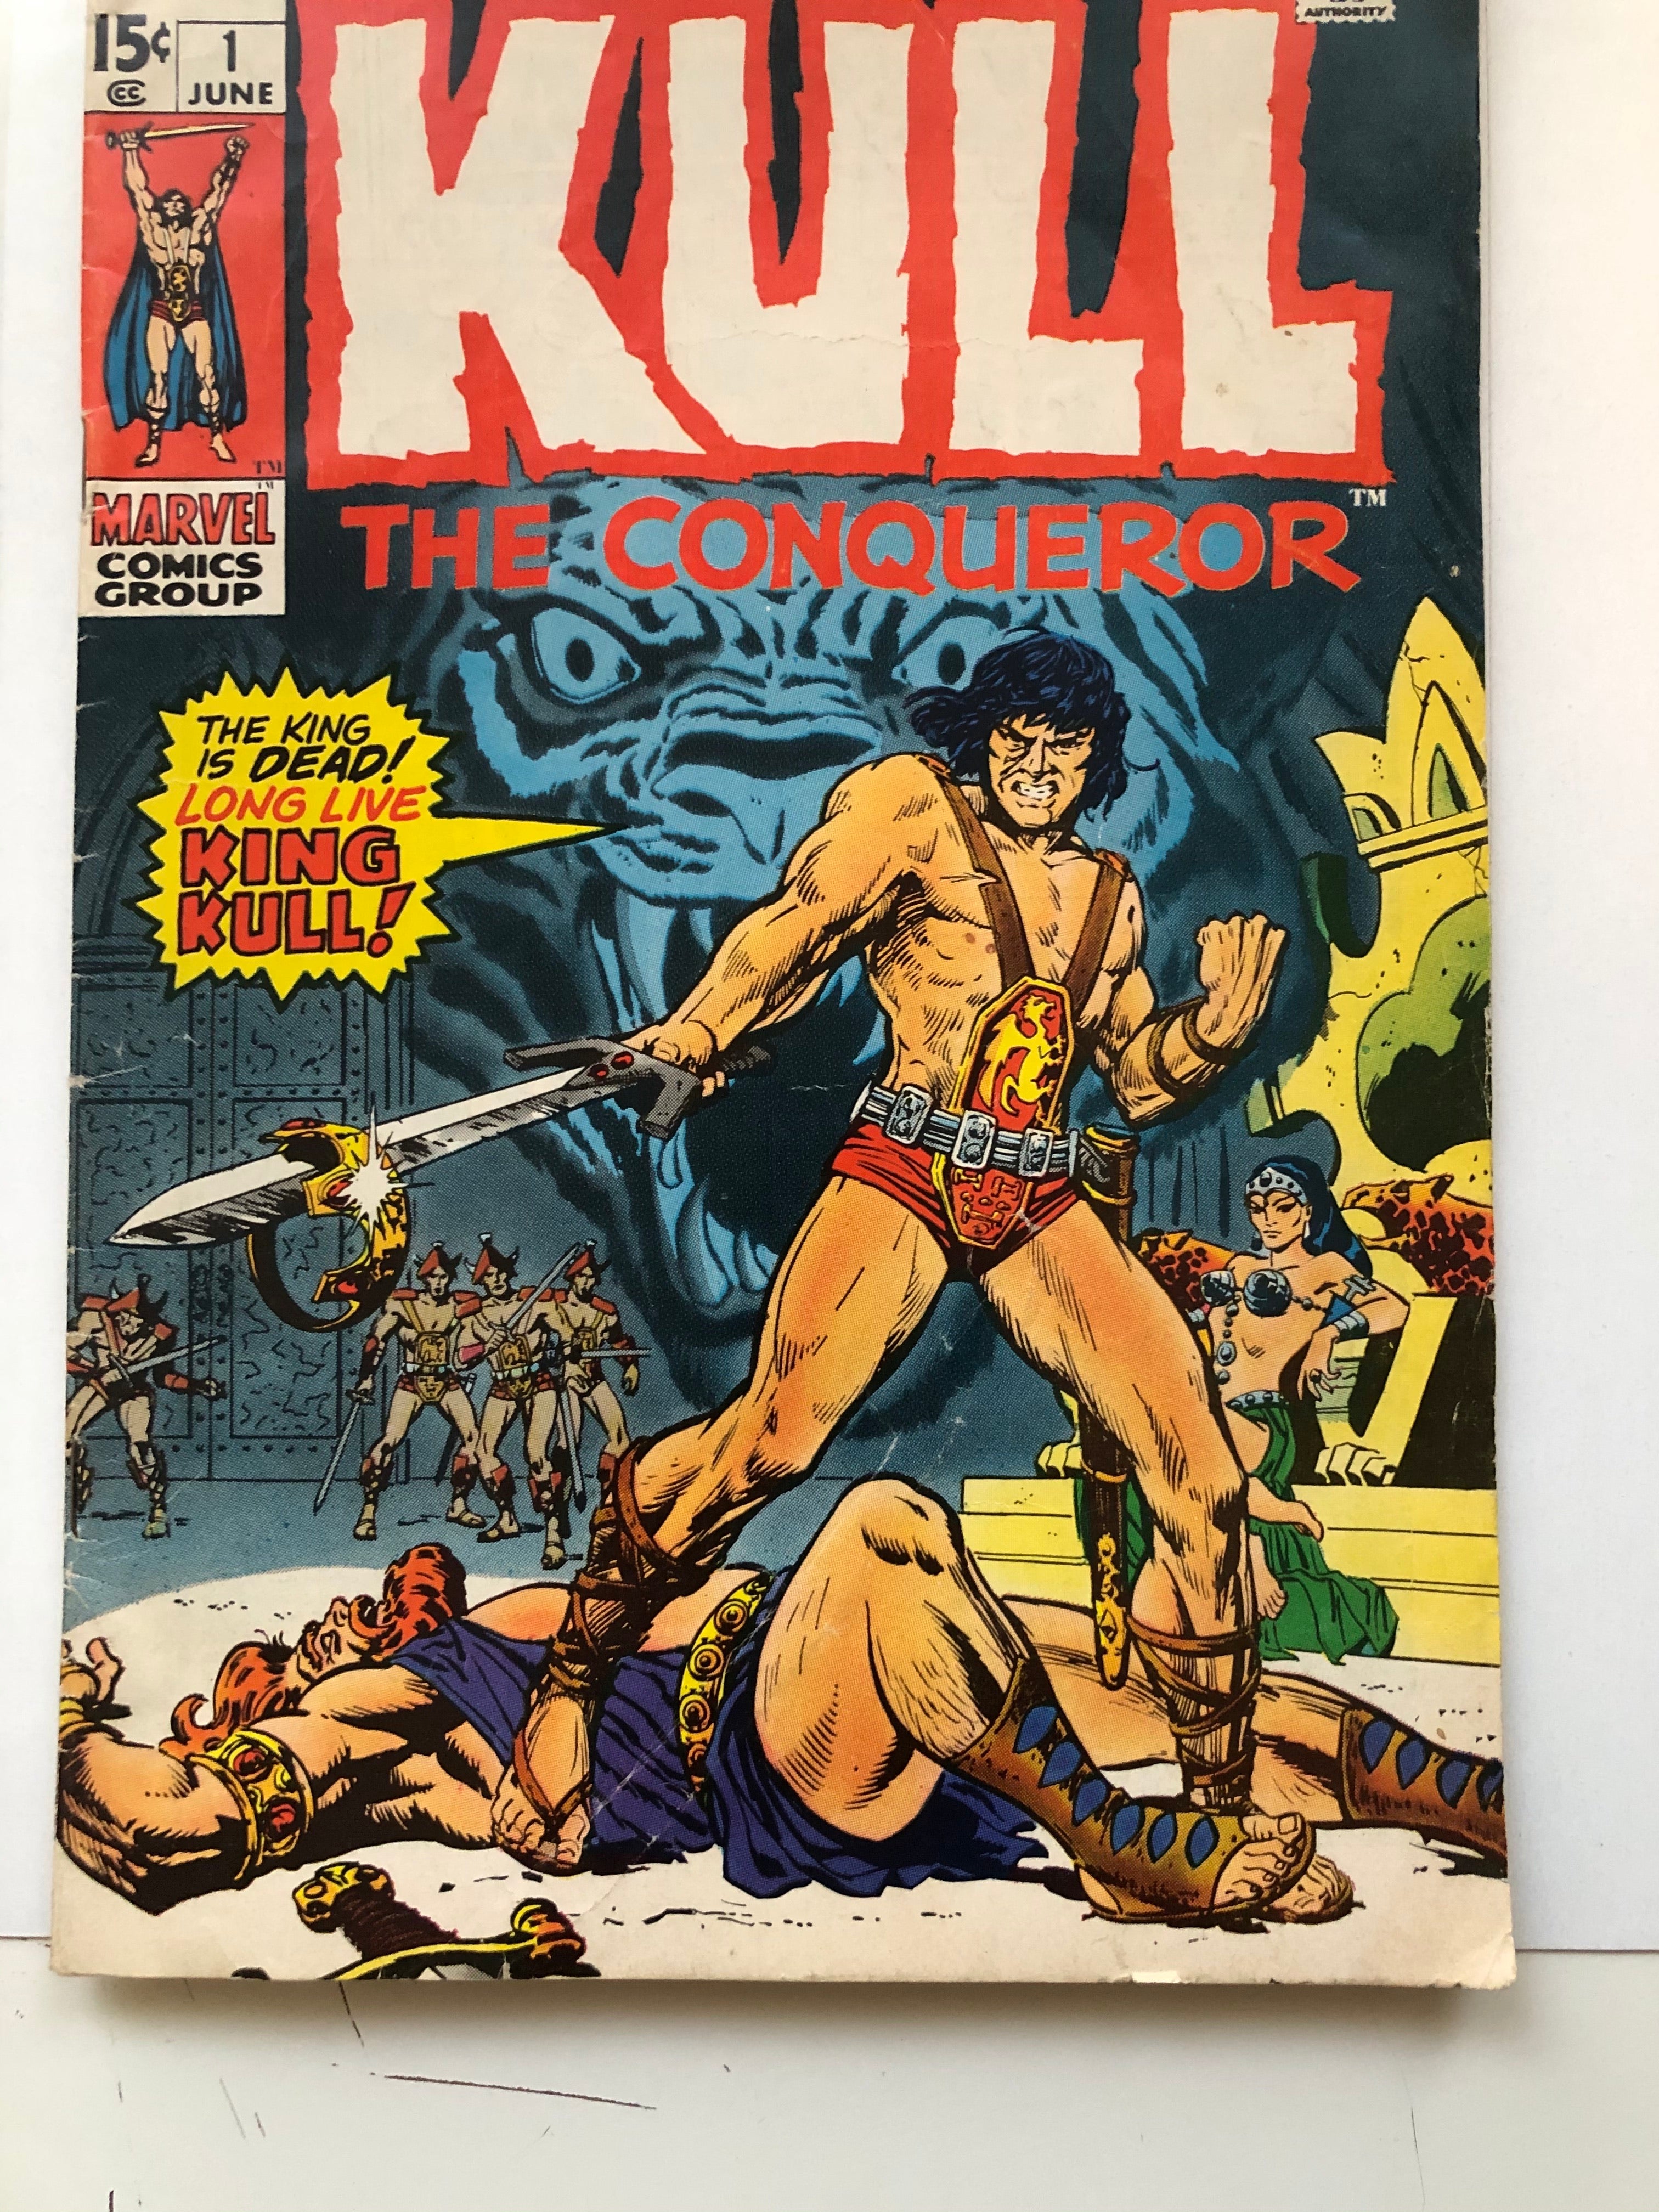 Kill the Conqueror #1 comic book 1971